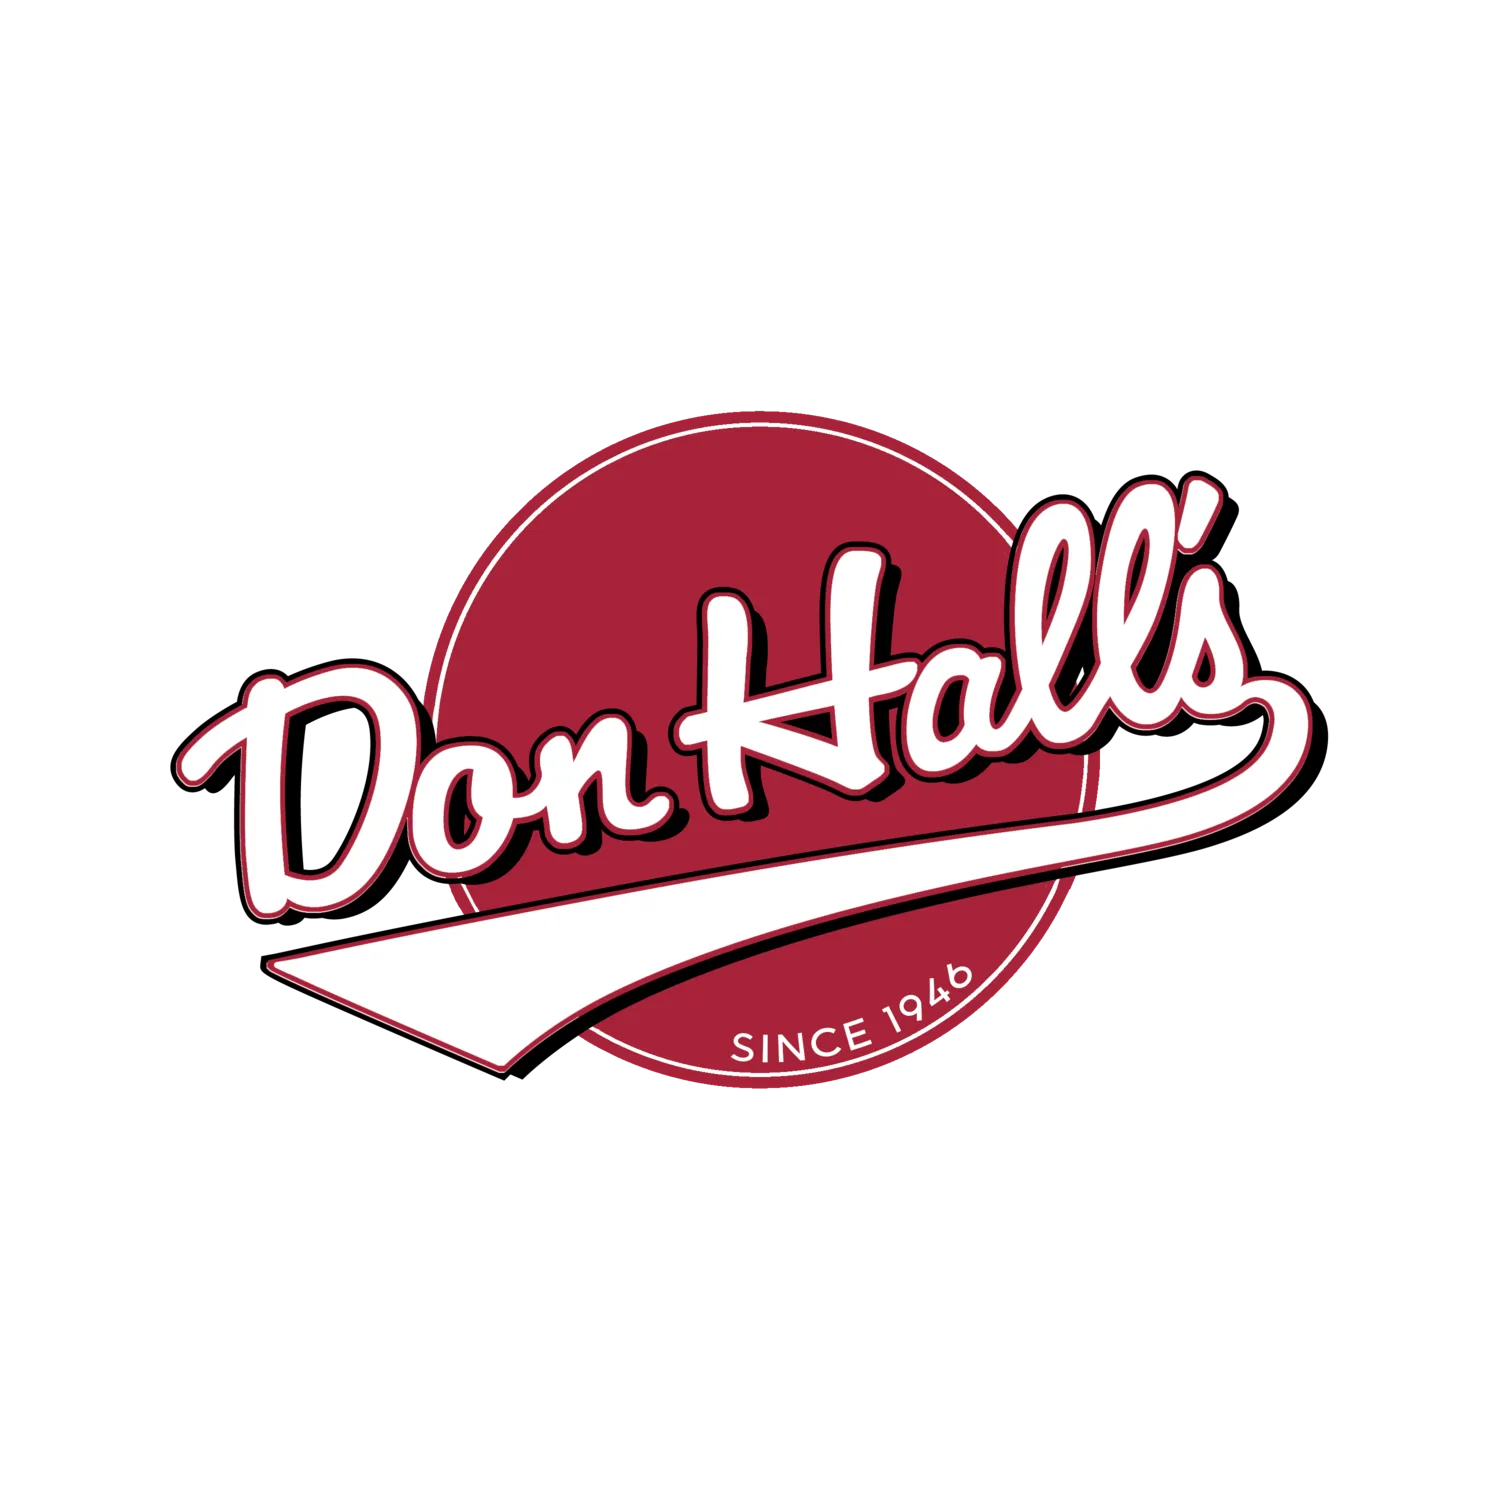 Don Hall's